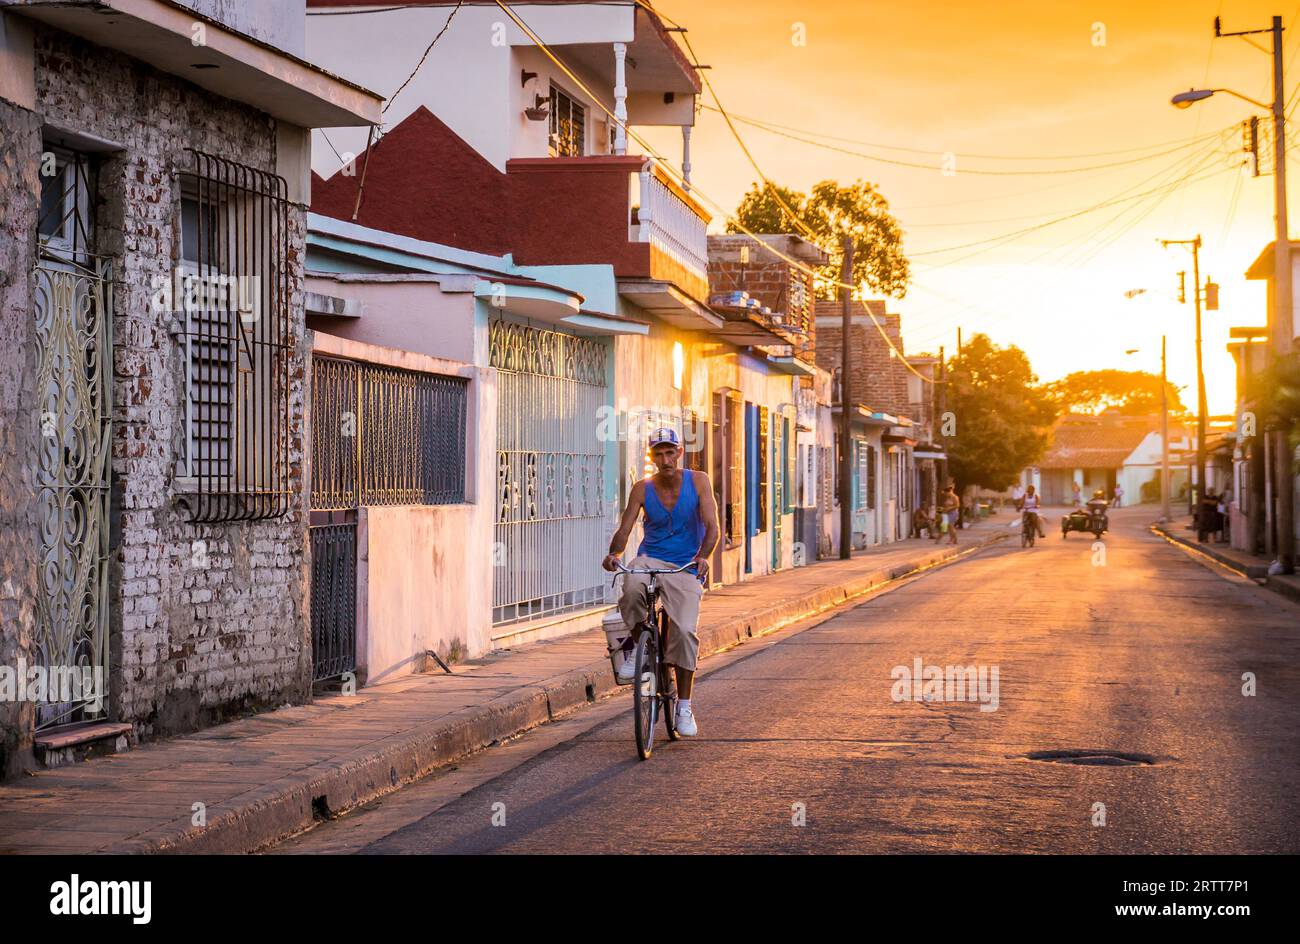 Camagüey, Kuba am 2. Januar 2016: kubanische Mann mit seinem Fahrrad durch eine Straße in der Karibik Altstadt Zentrum von Camagüey bei Sonnenuntergang Stockfoto